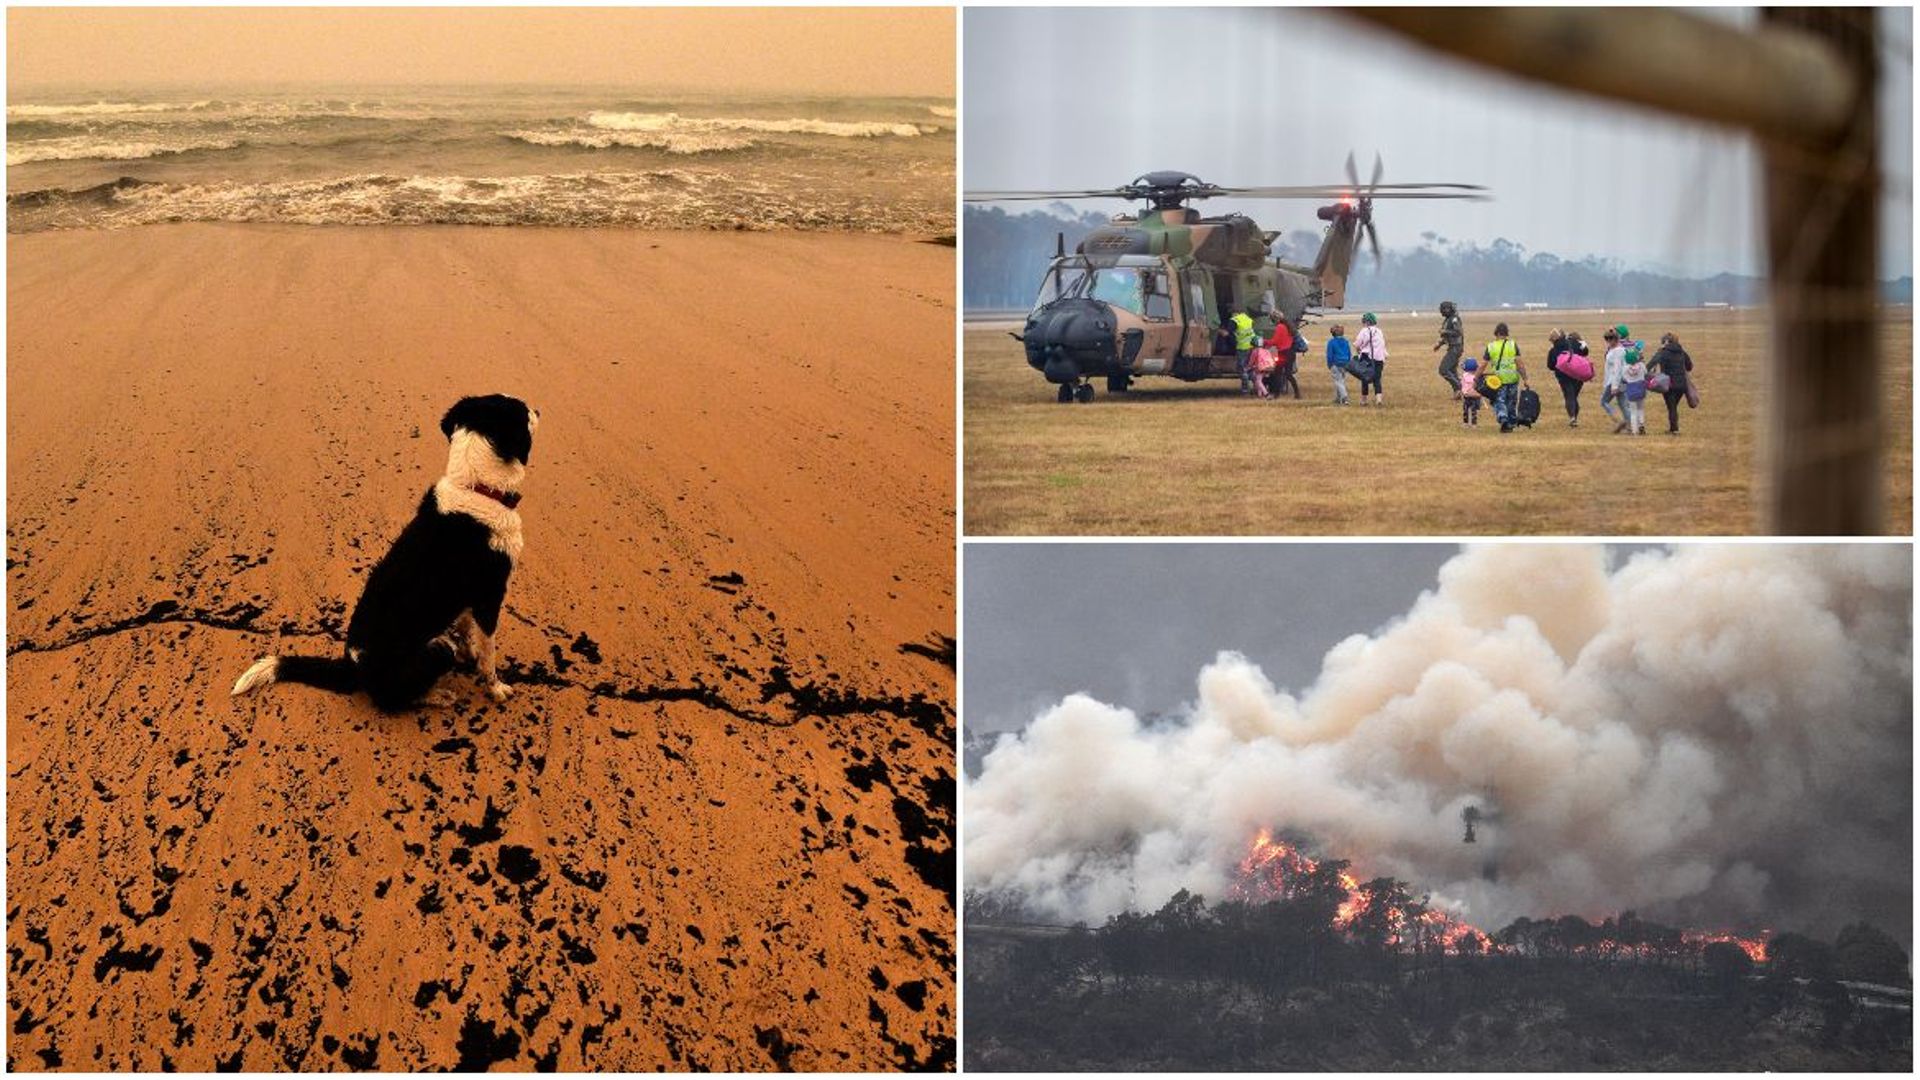 Pompiers épuisés, fumées jusqu'en Argentine, cyclone attendu: le point sur les incendies en Australie